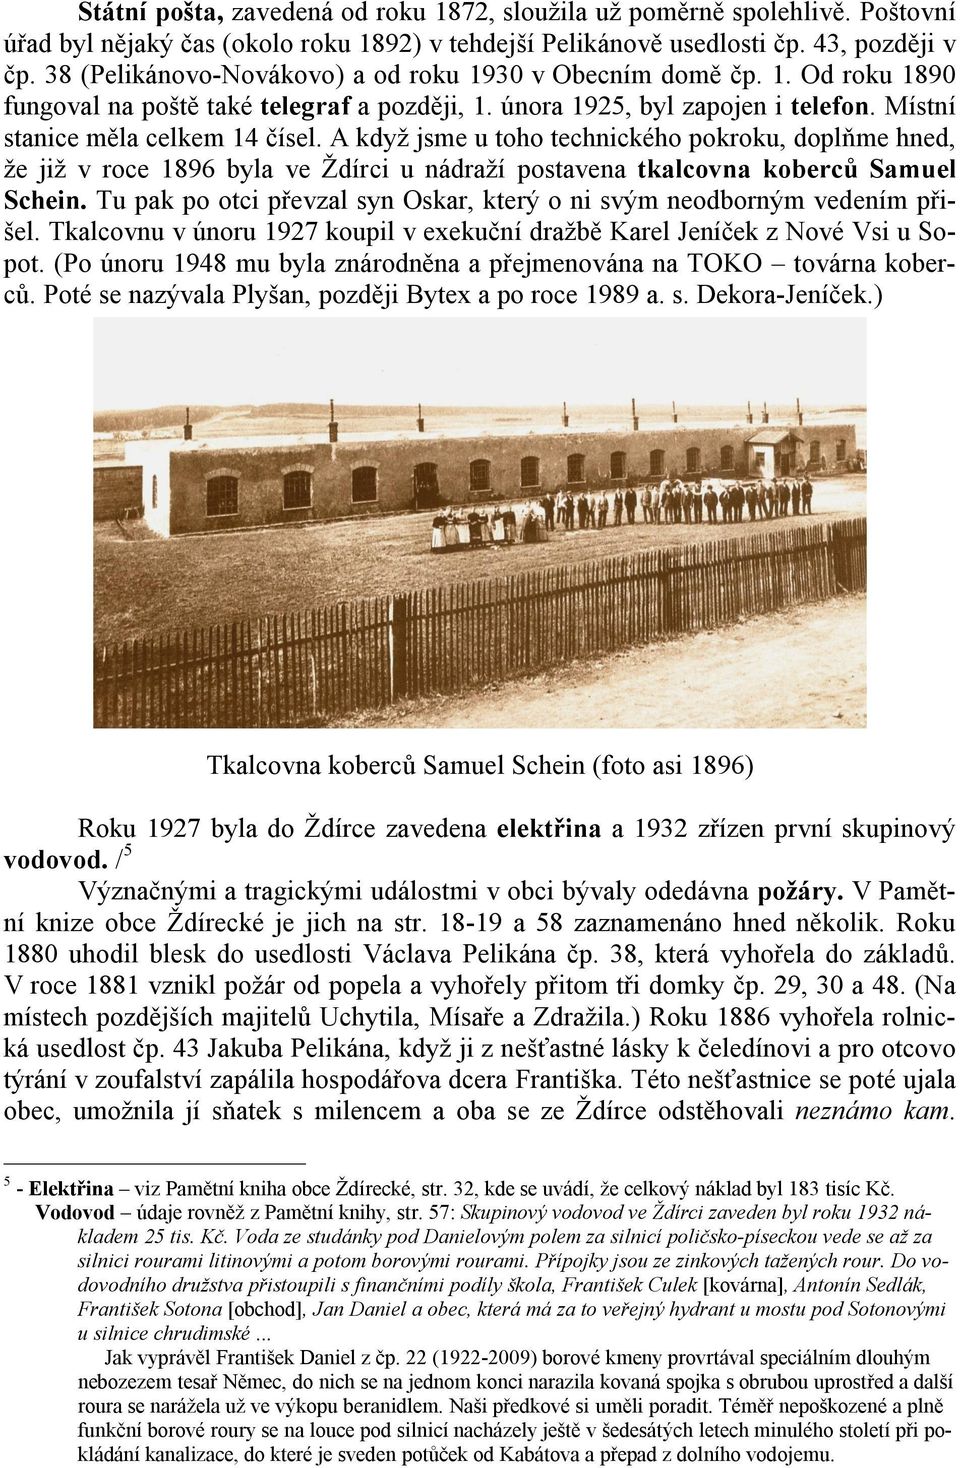 A když jsme u toho technického pokroku, doplňme hned, že již v roce 1896 byla ve Ždírci u nádraží postavena tkalcovna koberců Samuel Schein.